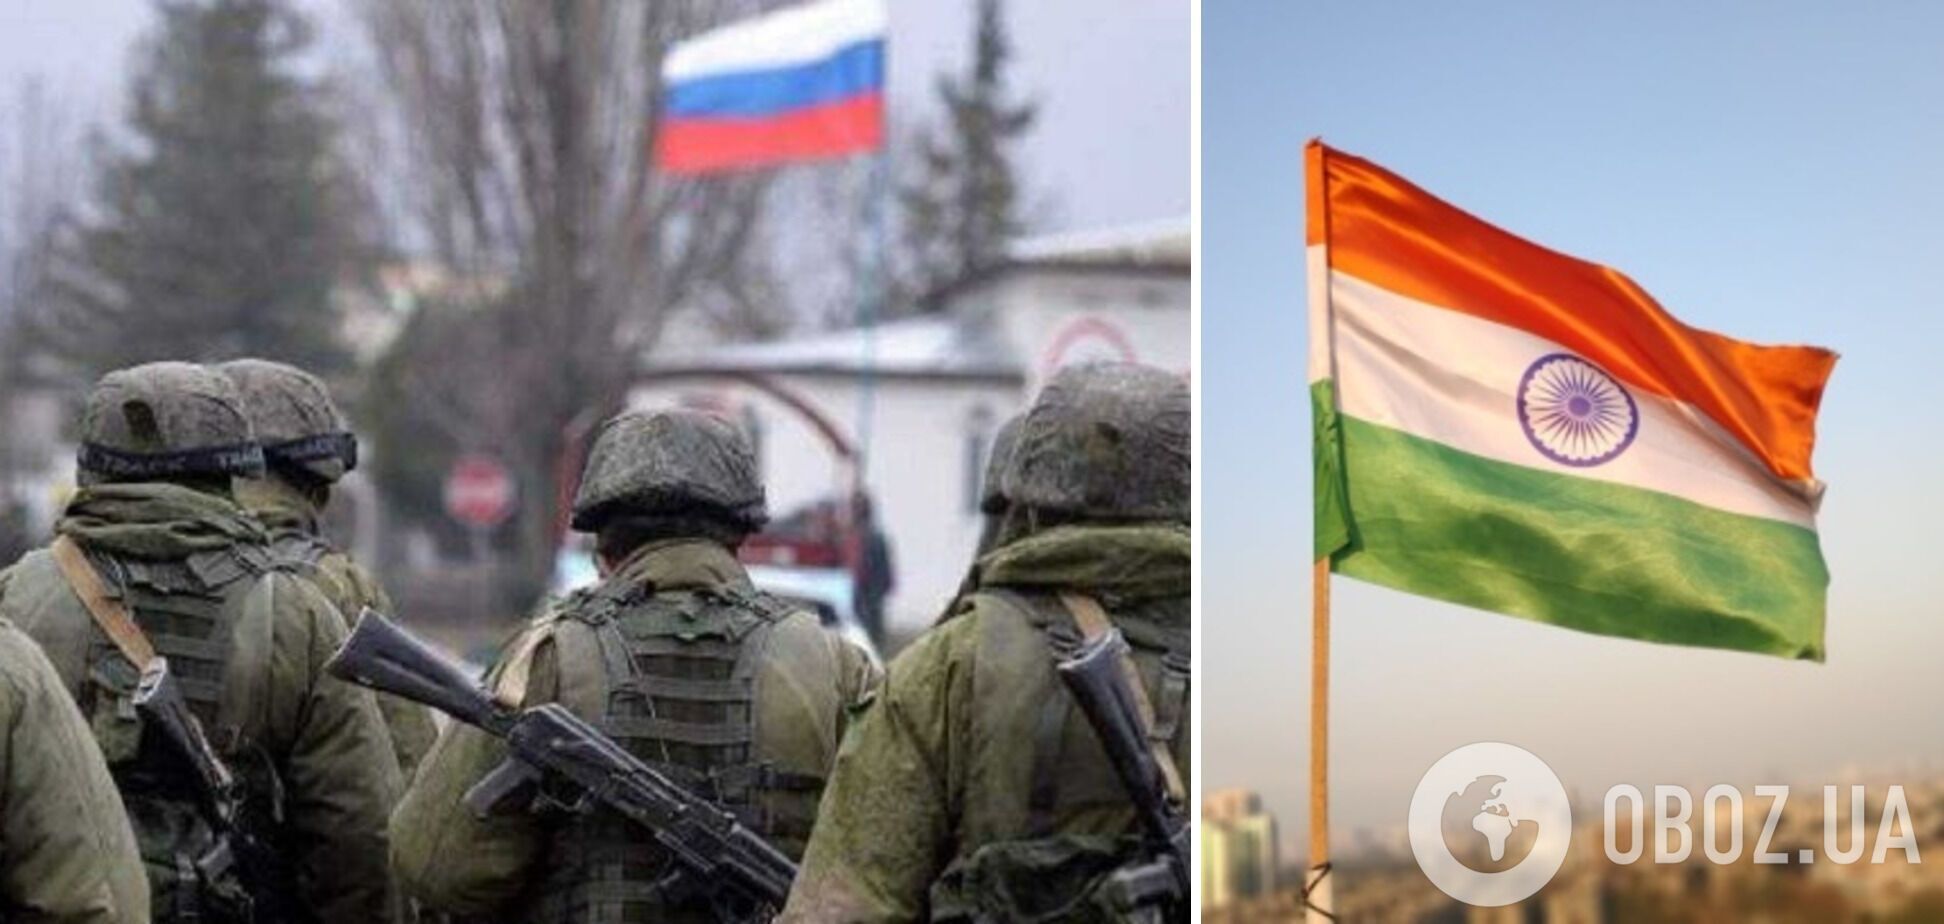 Индия пытается вернуть своих граждан, воюющих в Украине в составе армии РФ – FT